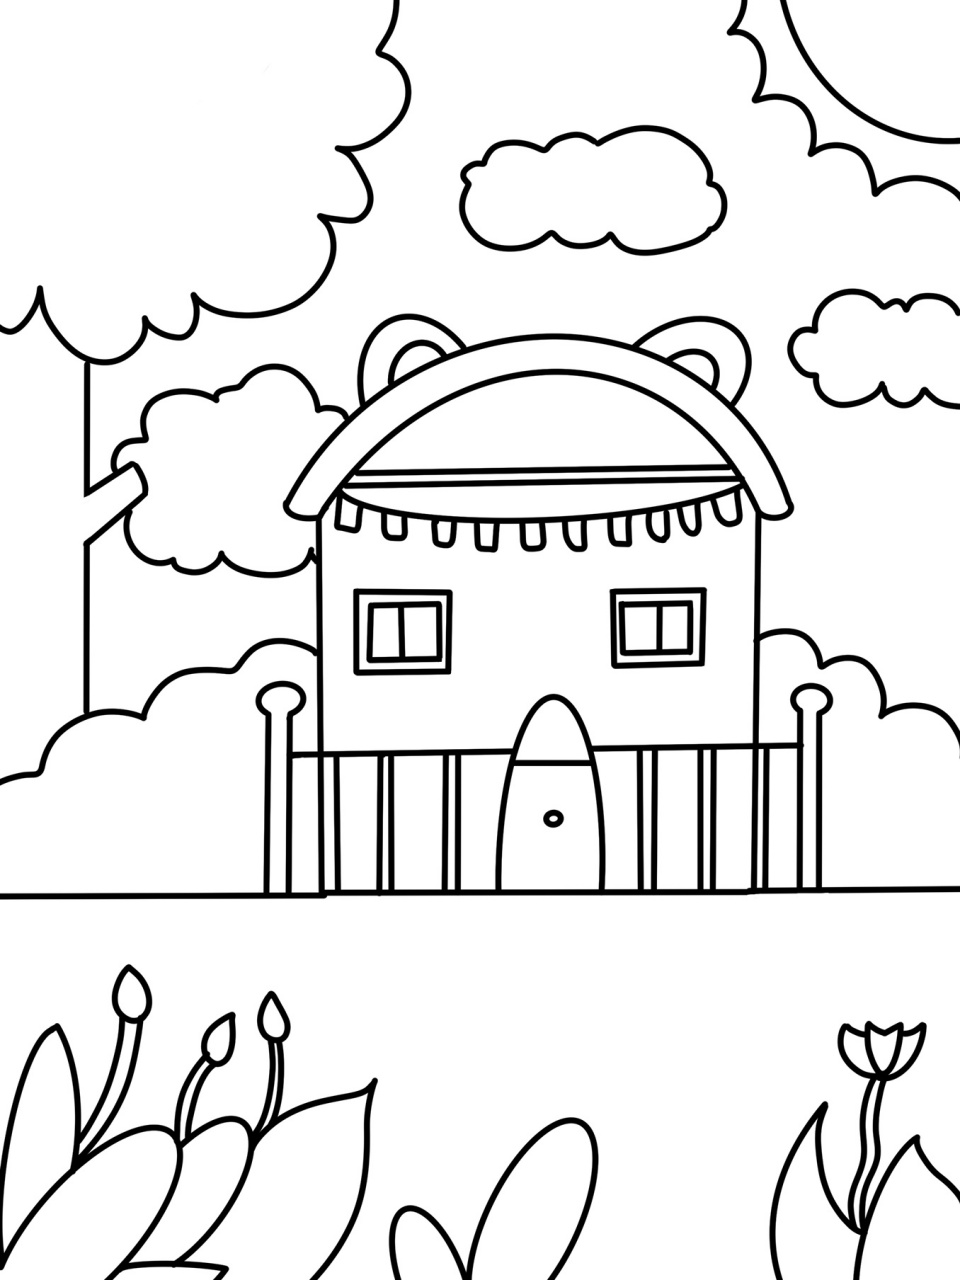 可爱的小房子92 儿童画 创意画 简笔画 